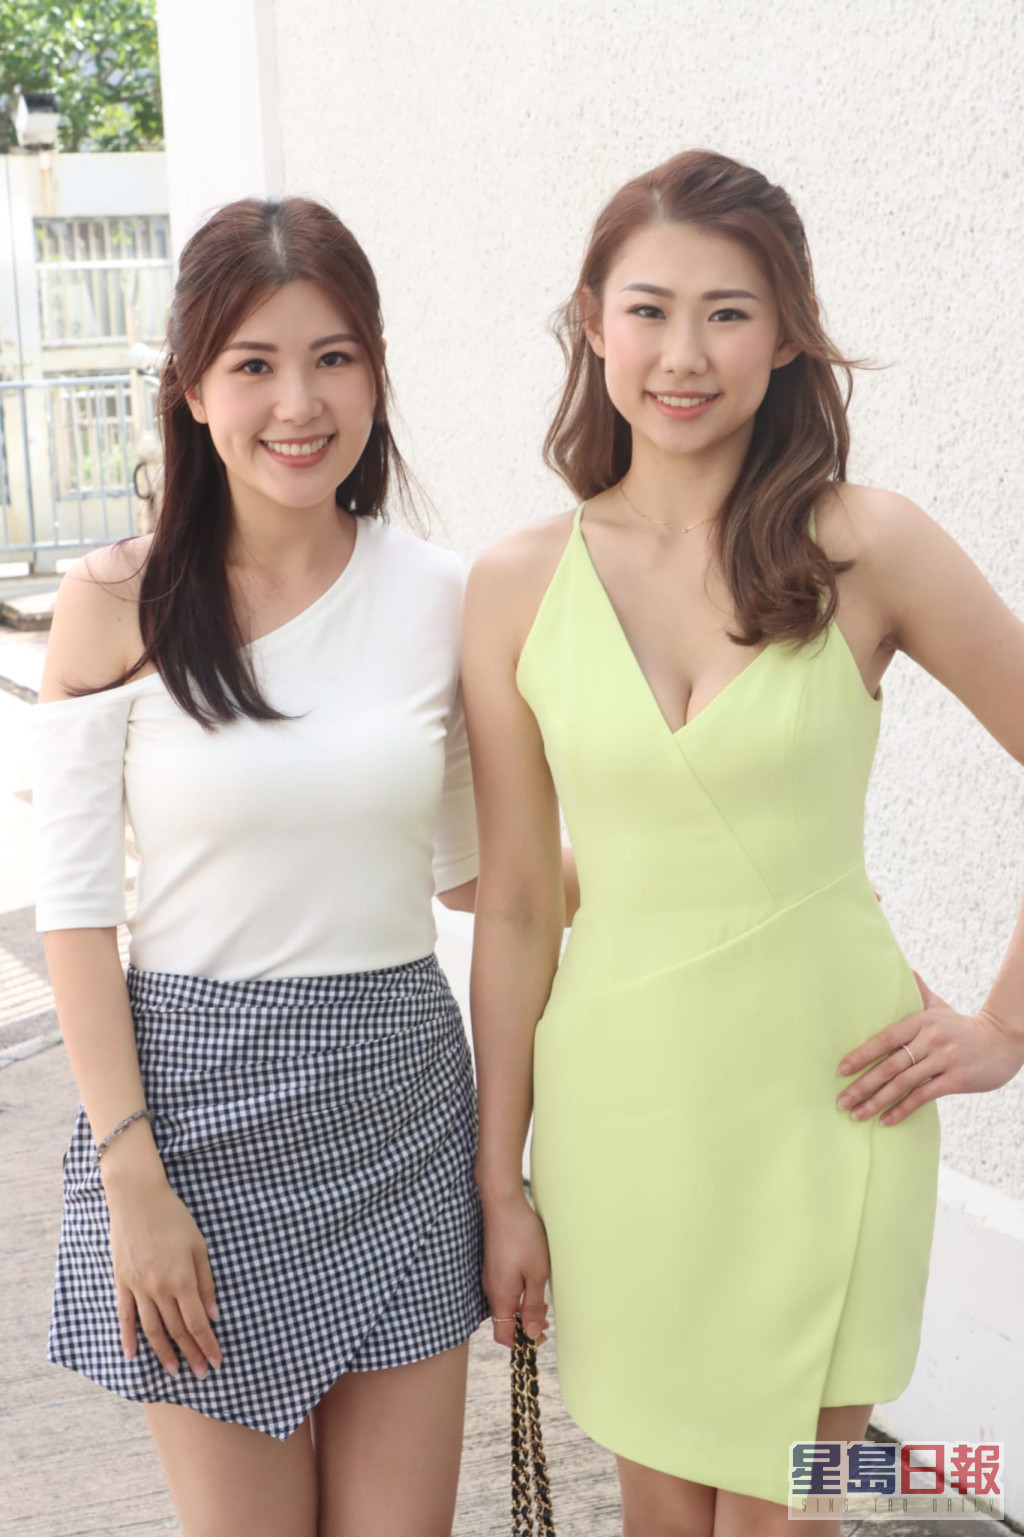 赵璧渝（左）今日都有陪妹妹赵颖琪去面试。  